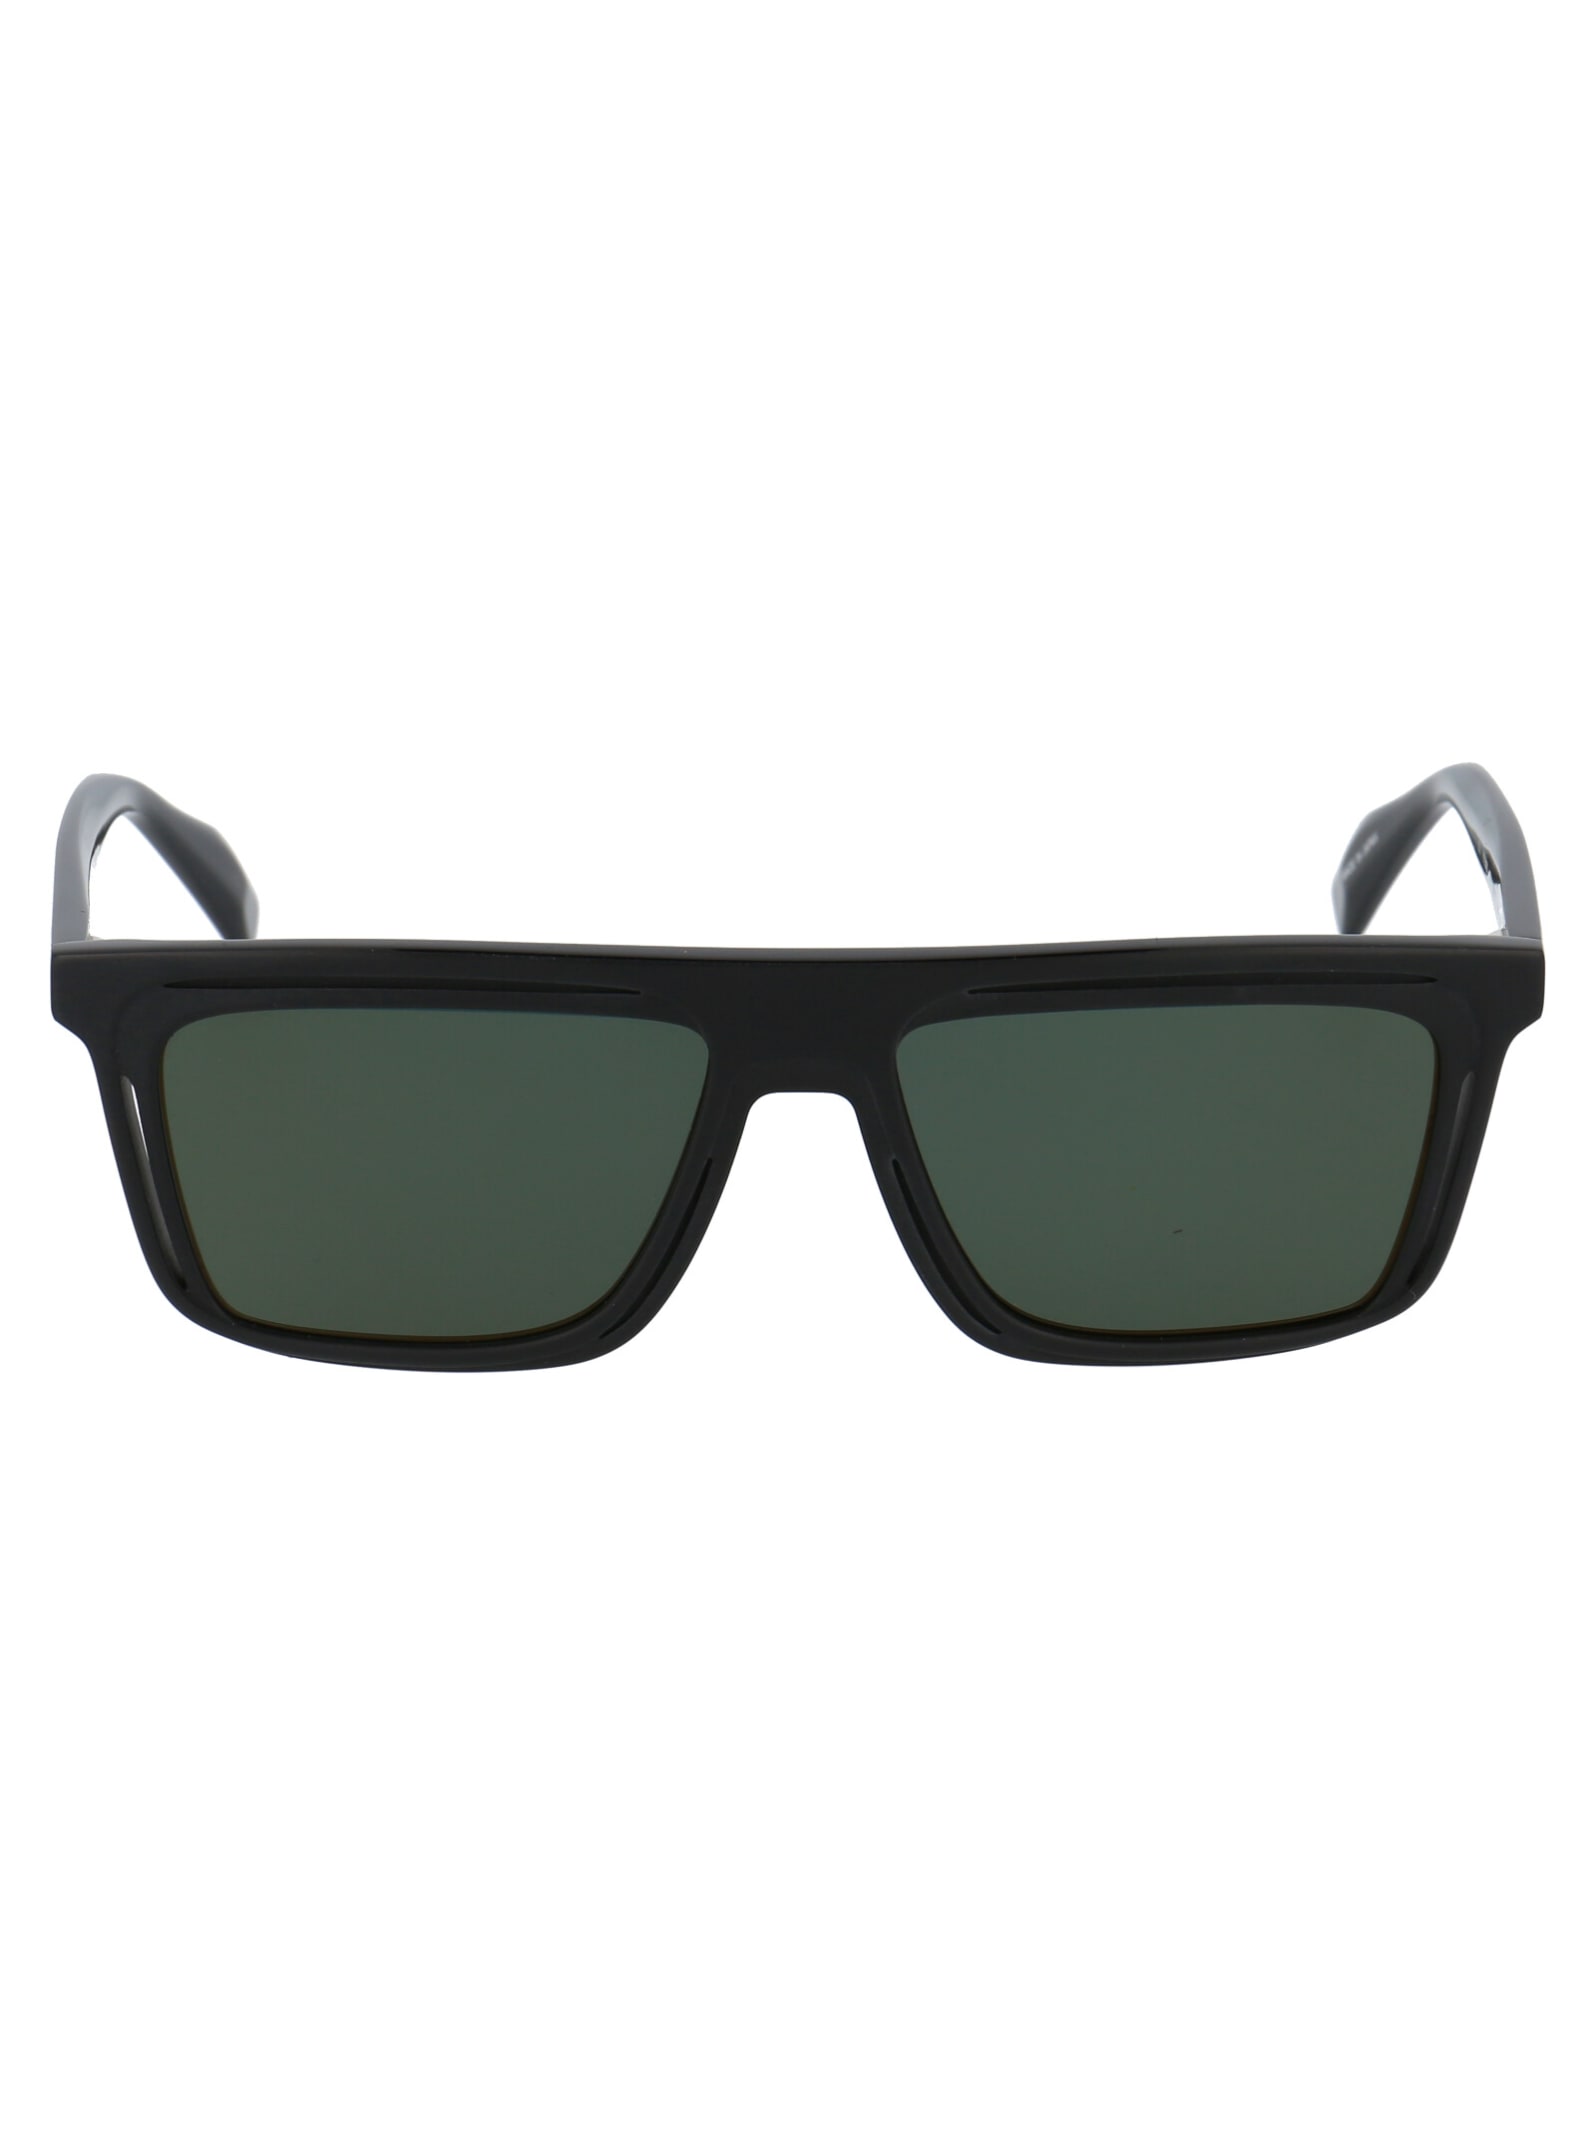 Yohji Yamamoto Yy5020 Sunglasses